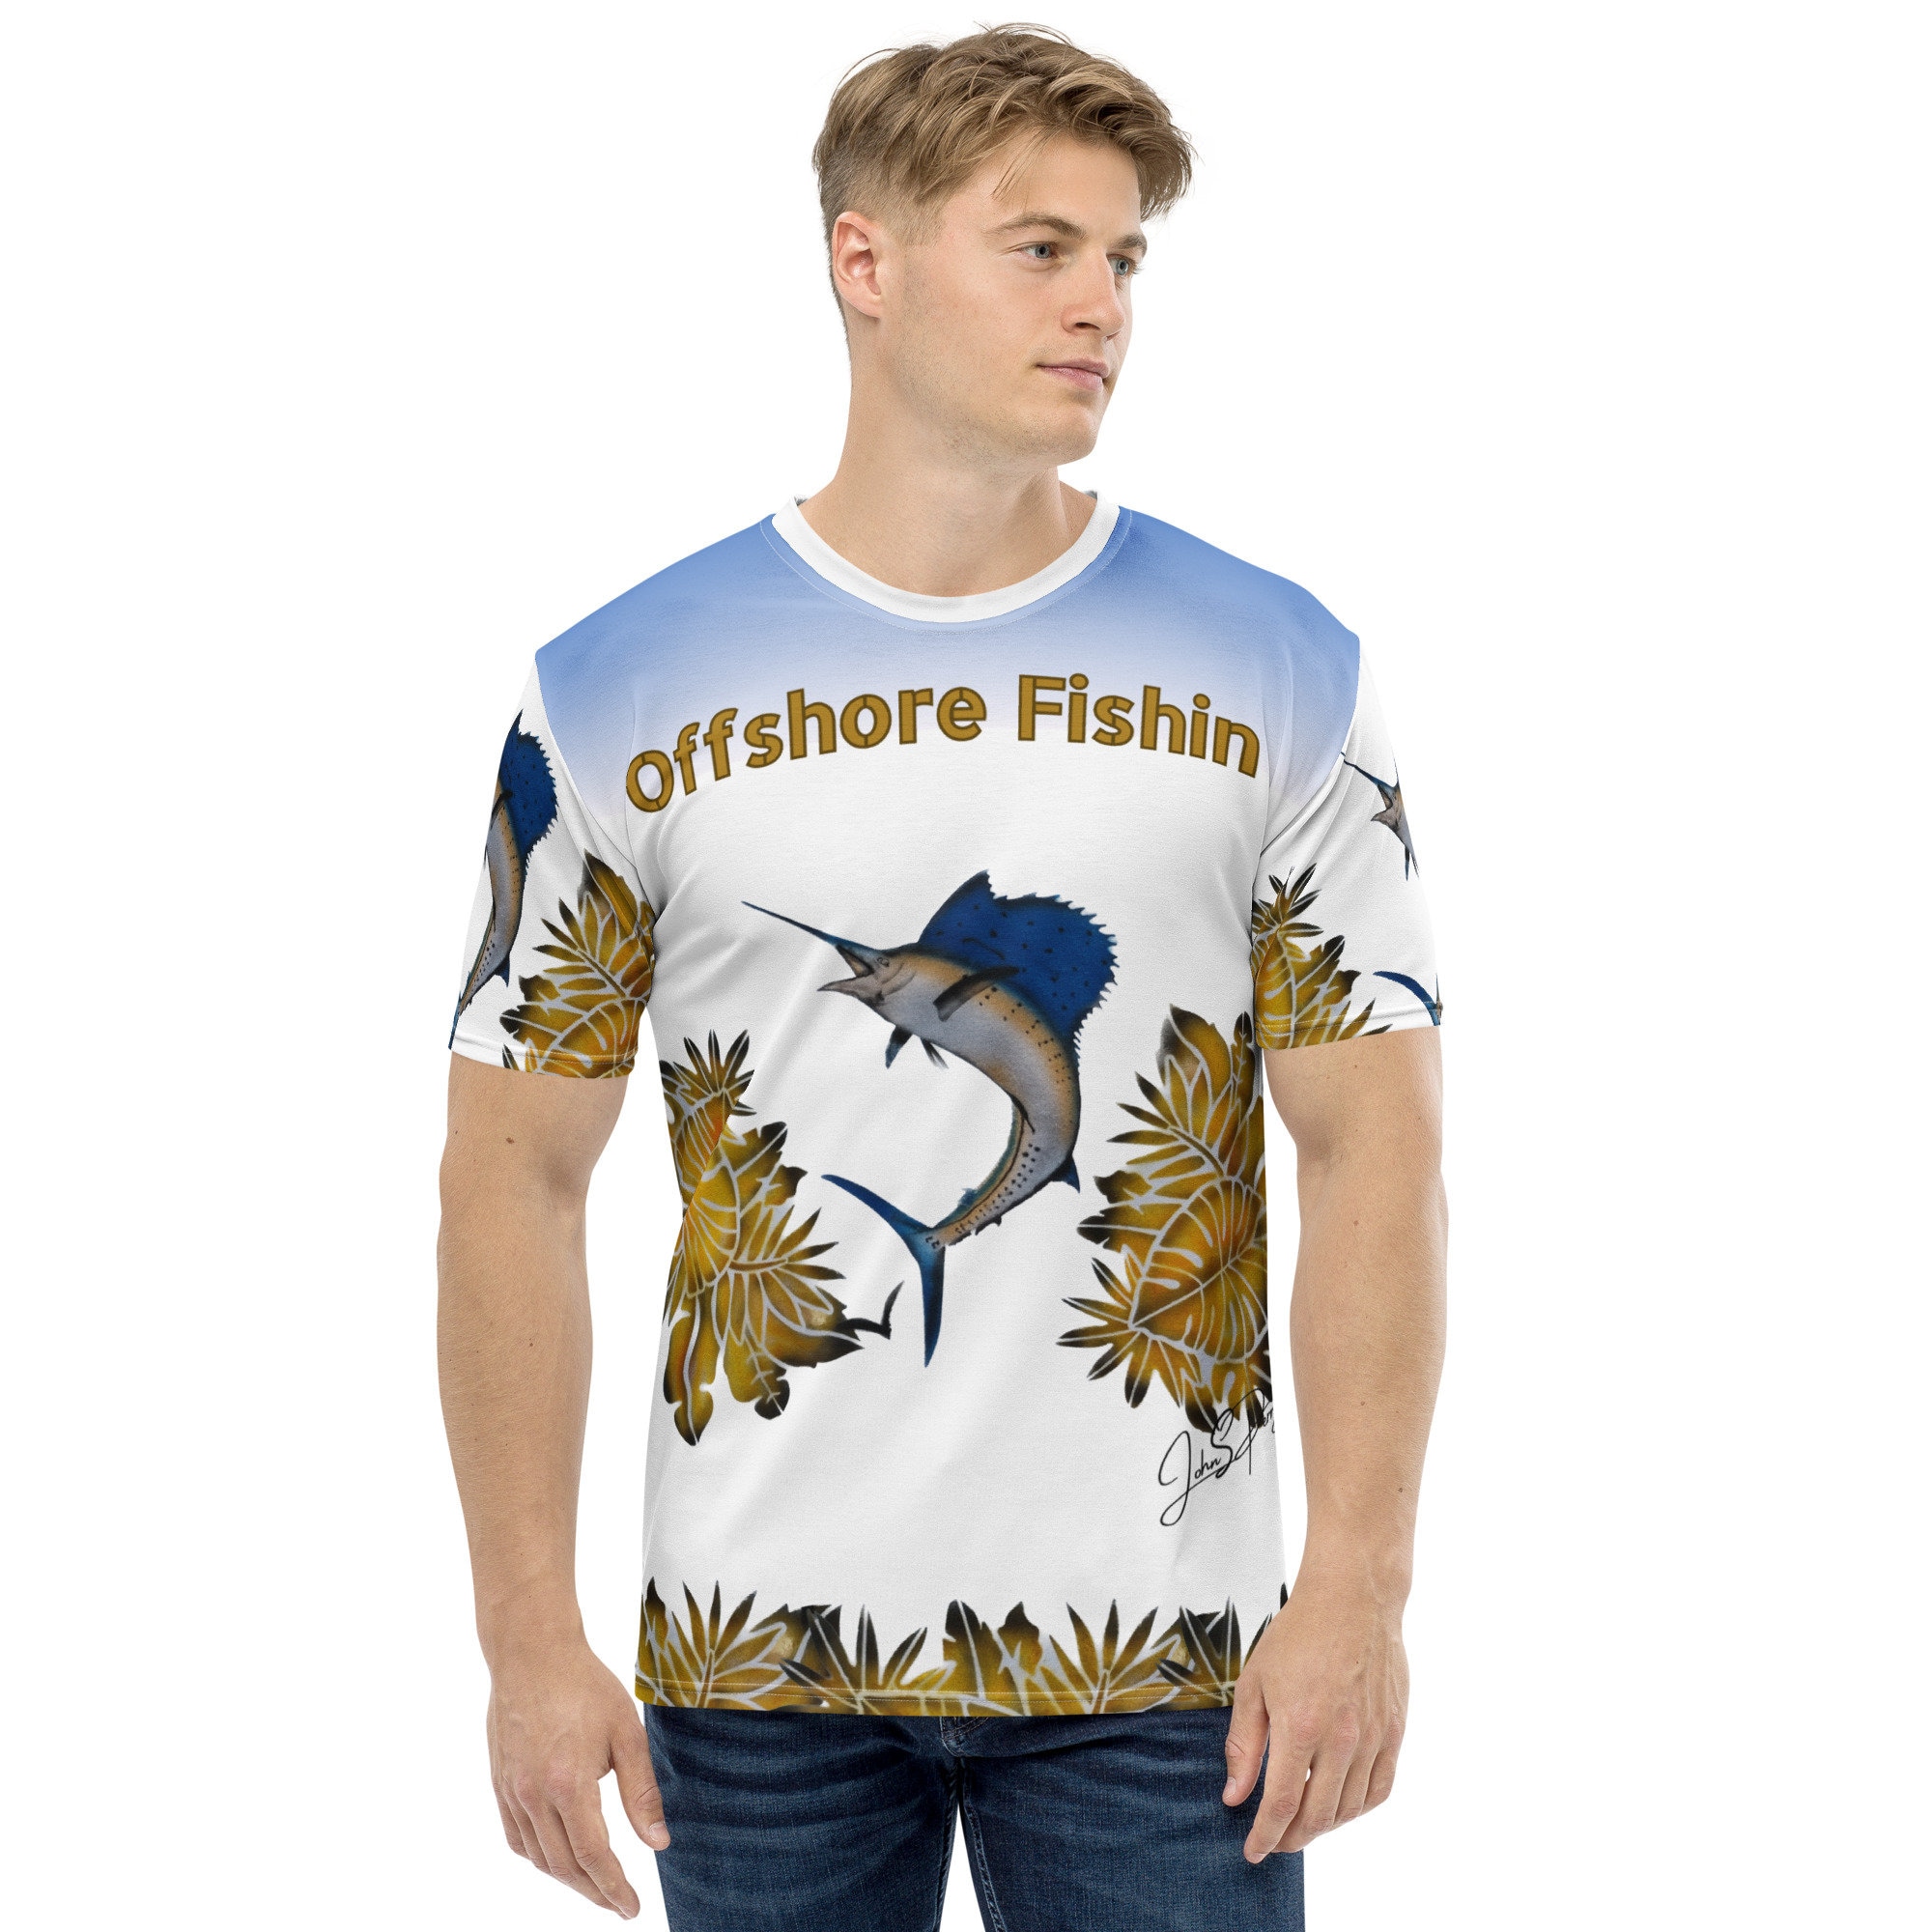 Offshore Fish Shirt 